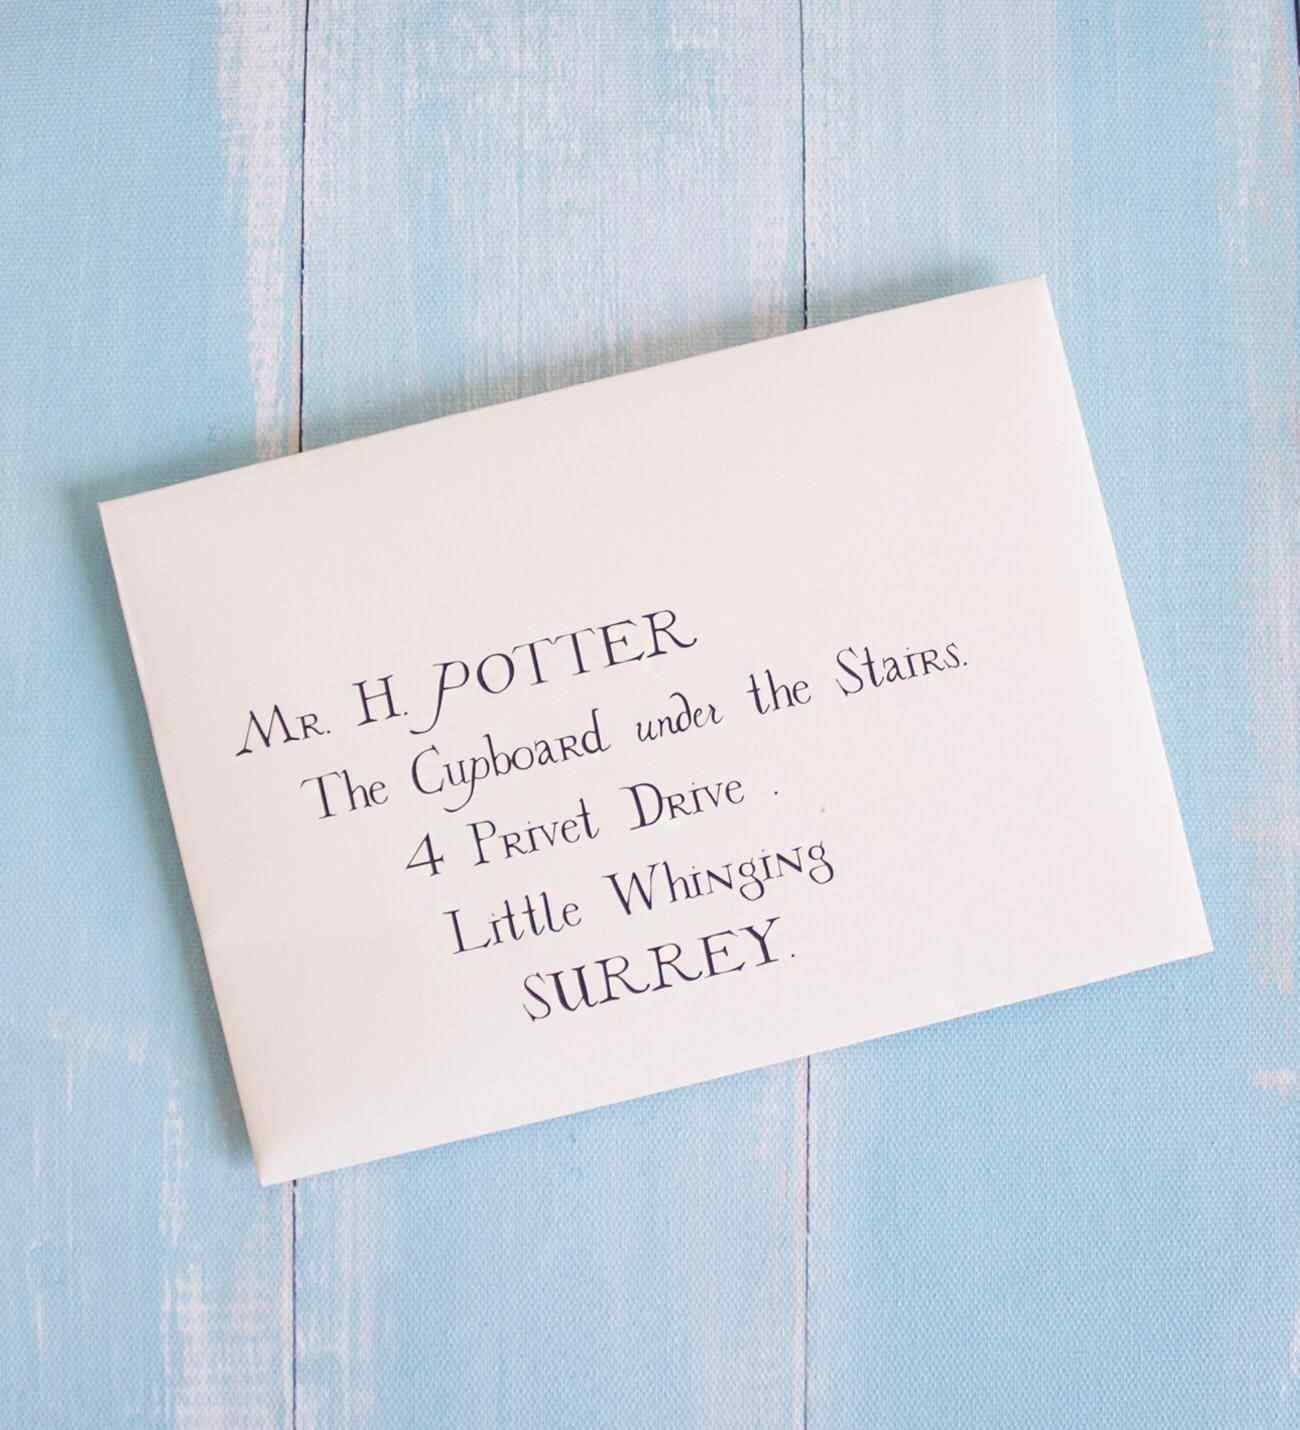 Harry Potter Hogwarts Davet Mektubu